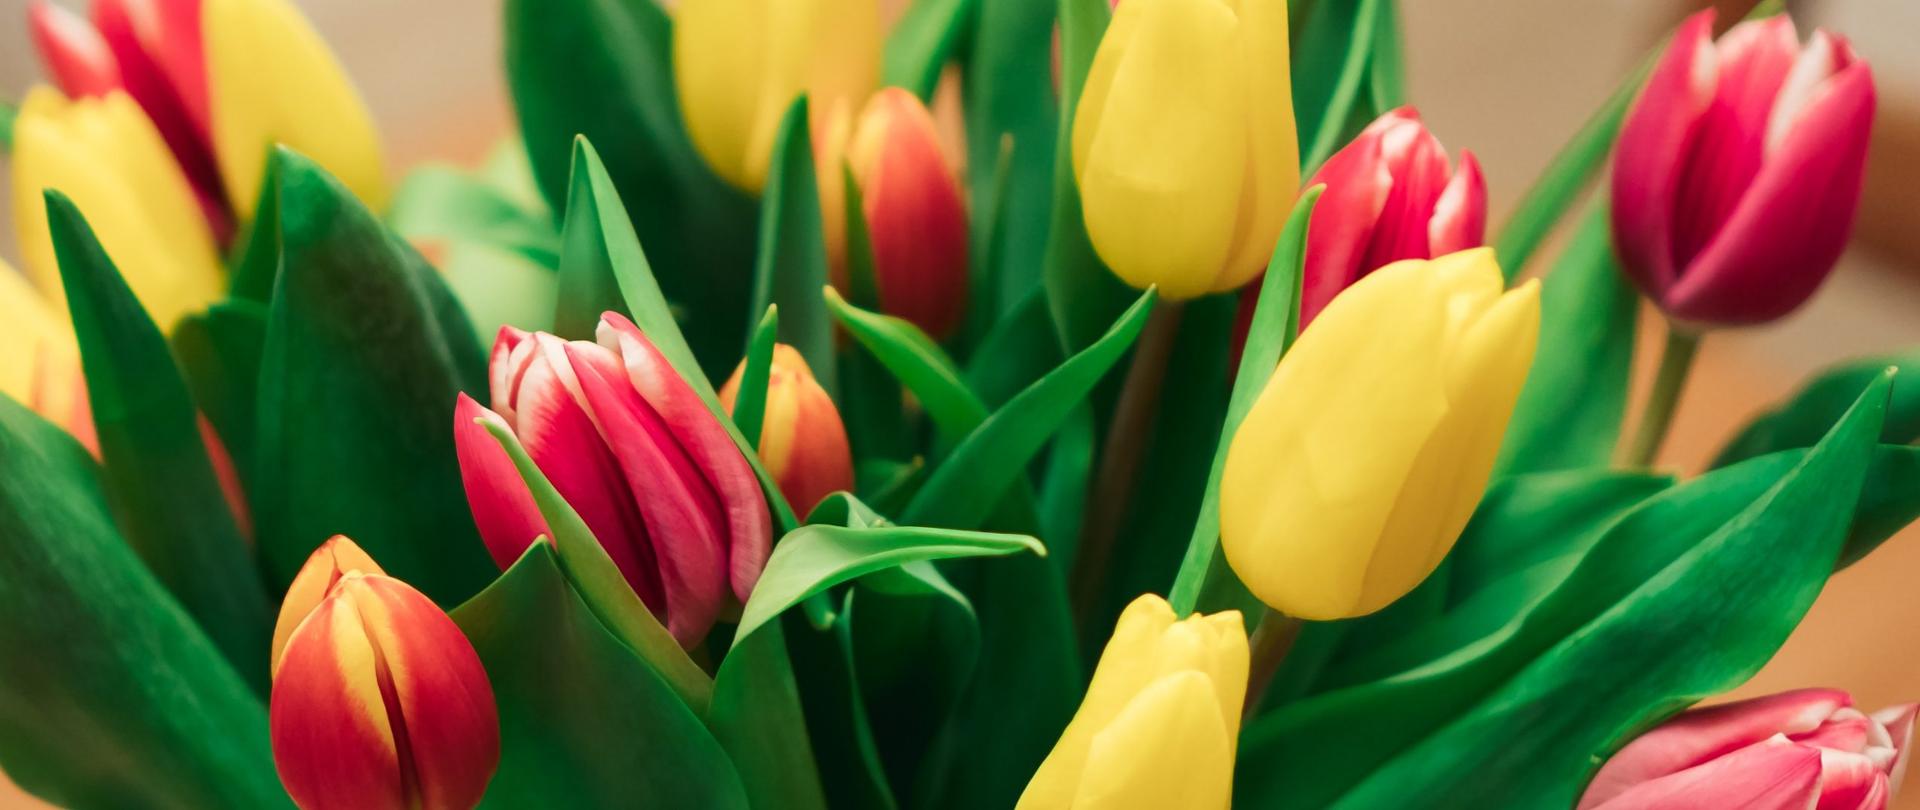 Bukiet czerwono żółtych tulipanów z okazji Dnia Kobiet